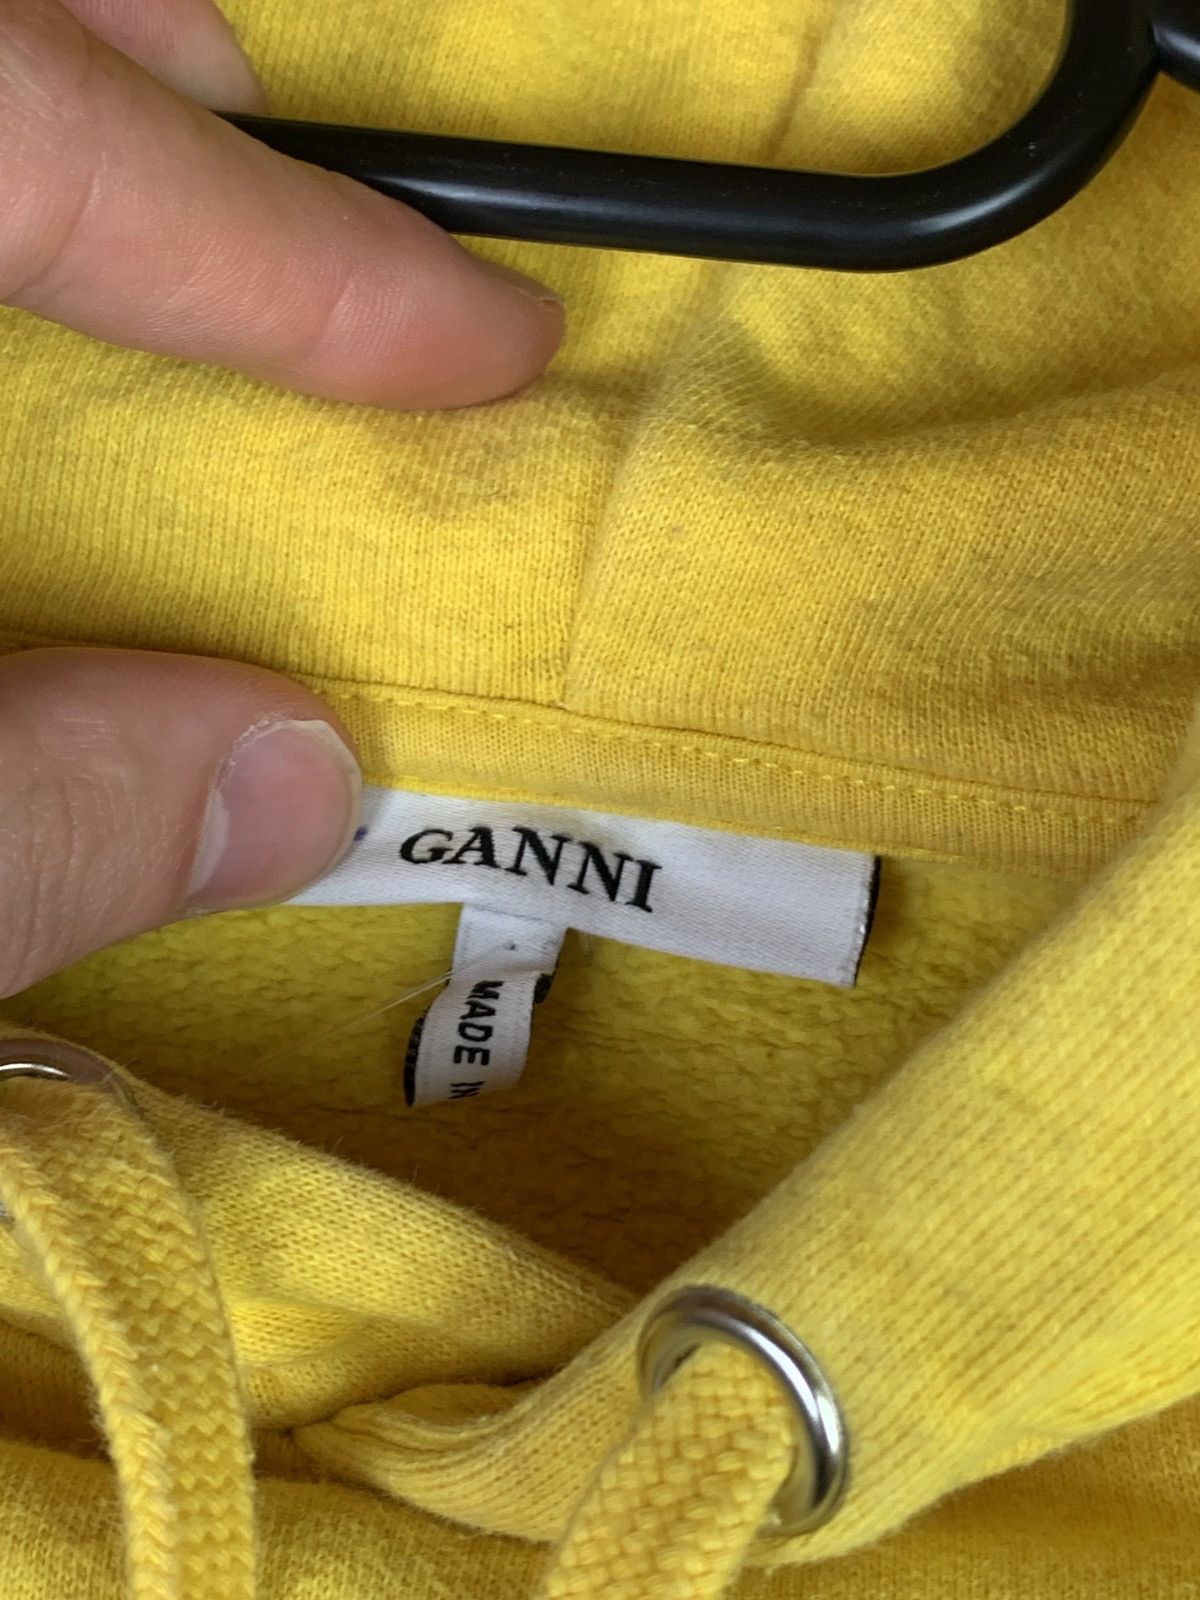 Ganni Ganni Lott Isoli Hoodie Easy Peasy Size S / US 4 / IT 40 - 6 Thumbnail